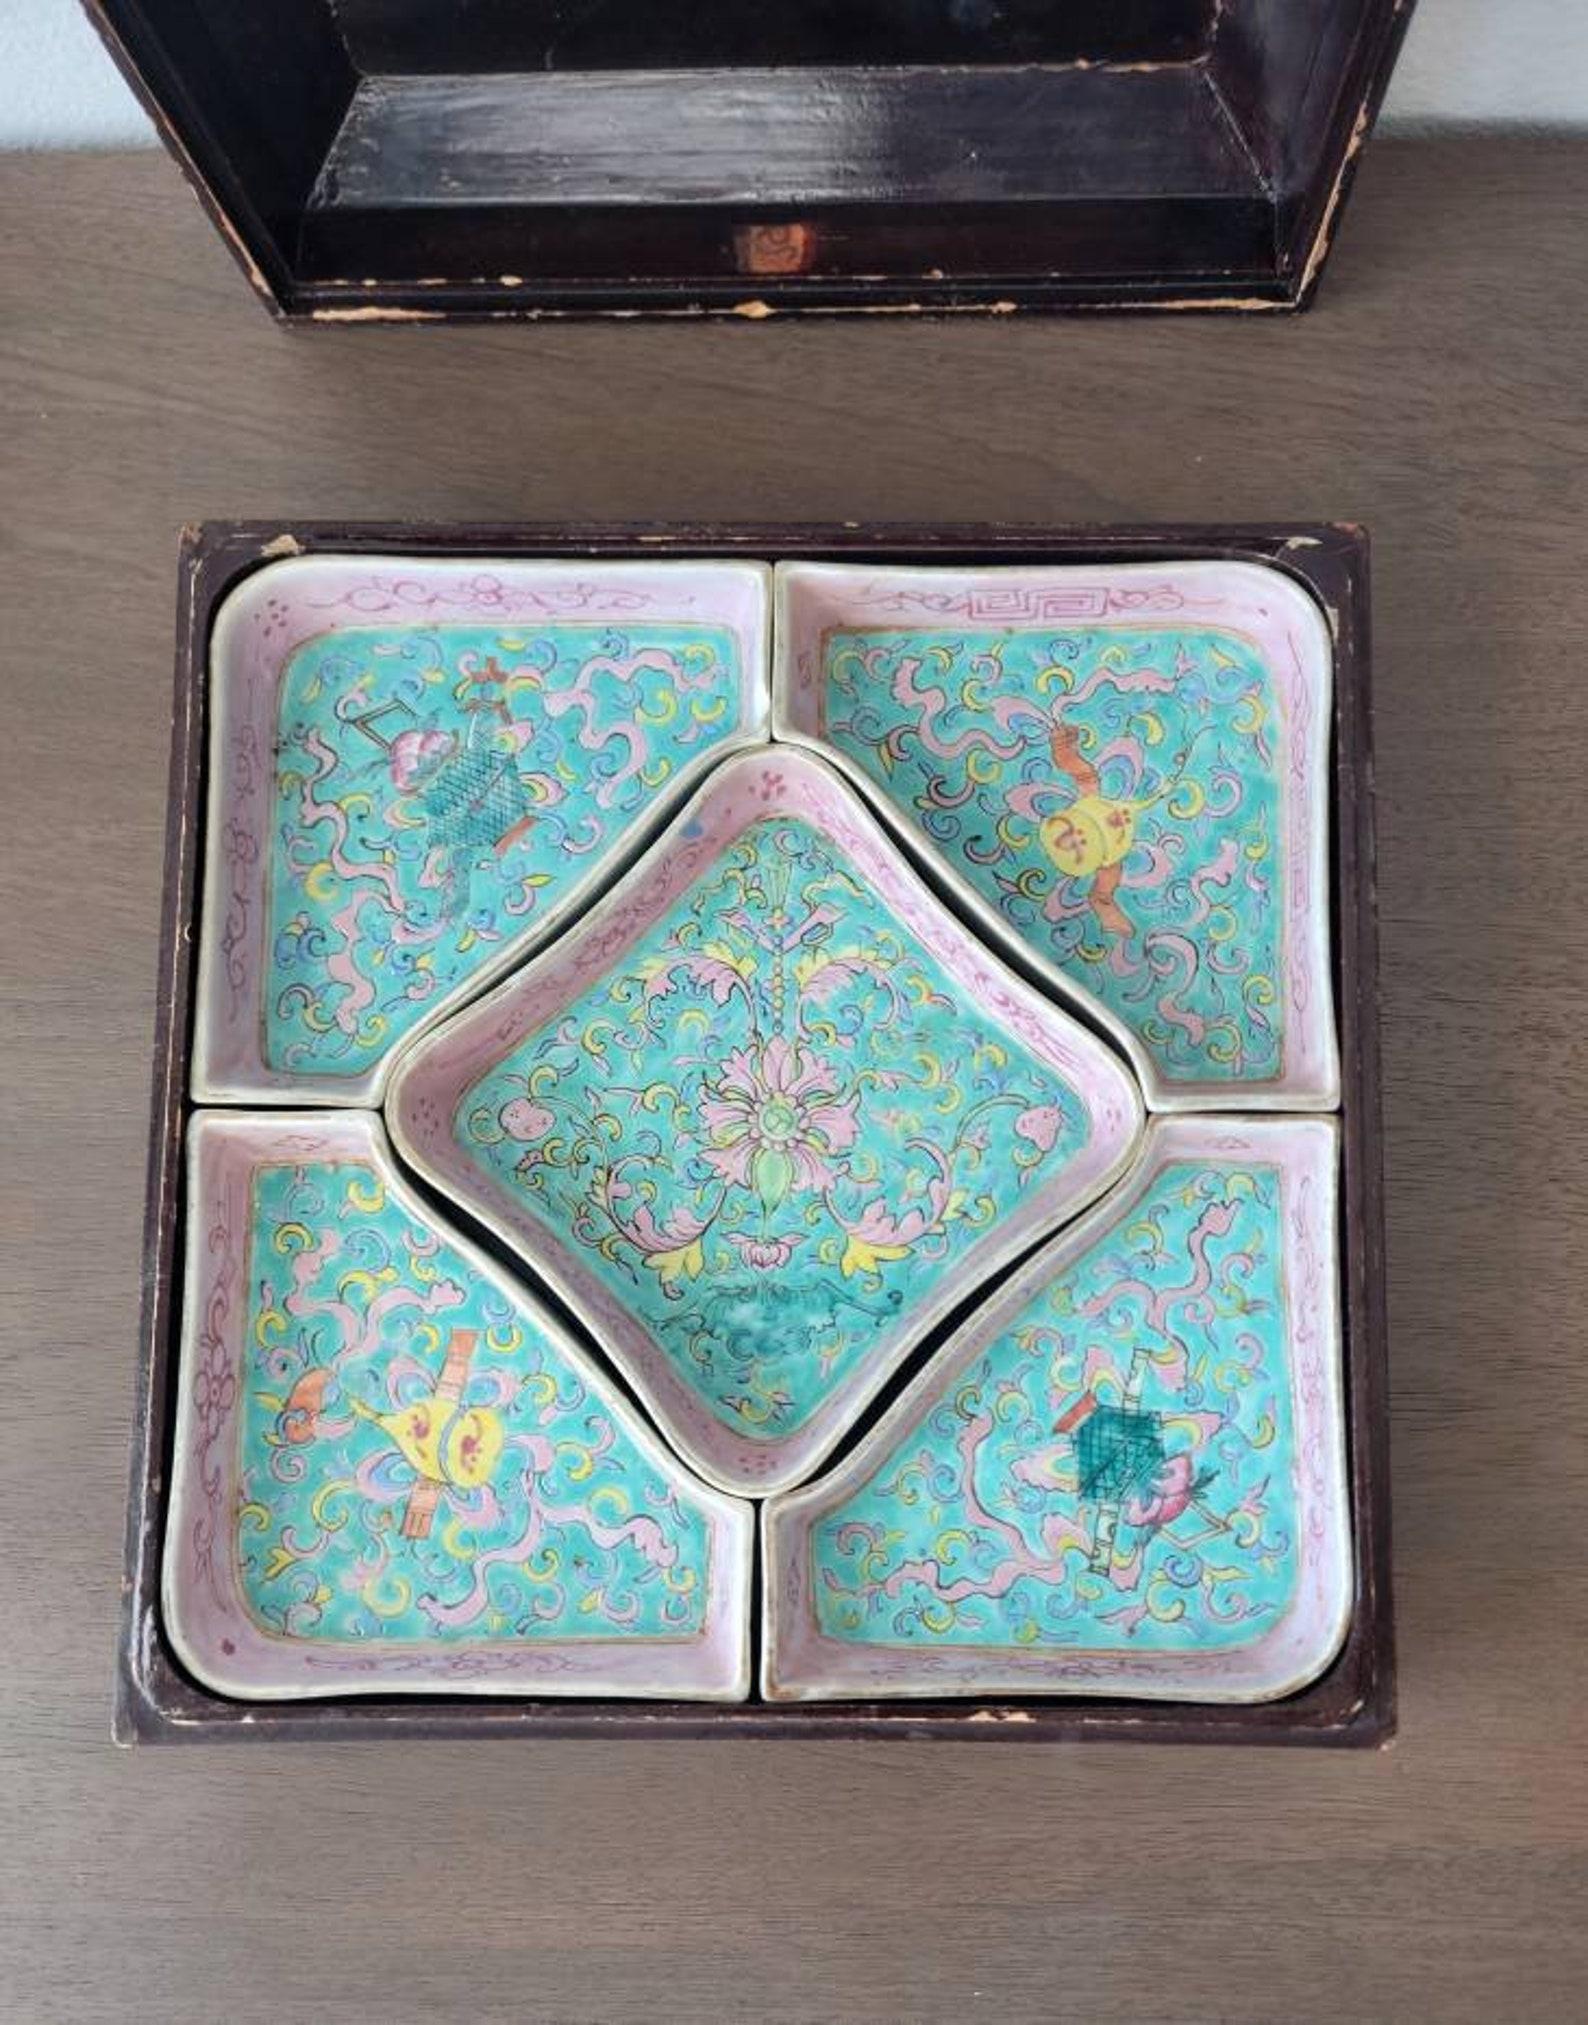 Ancienne boîte à friandises chinoise de la dynastie Qing (confiserie ou aliment sucré), datant du début du 20e siècle, comprenant une boîte laquée et peinte à la feuille d'or, décorée d'une scène naturaliste stylisée, s'ouvrant pour révéler cinq